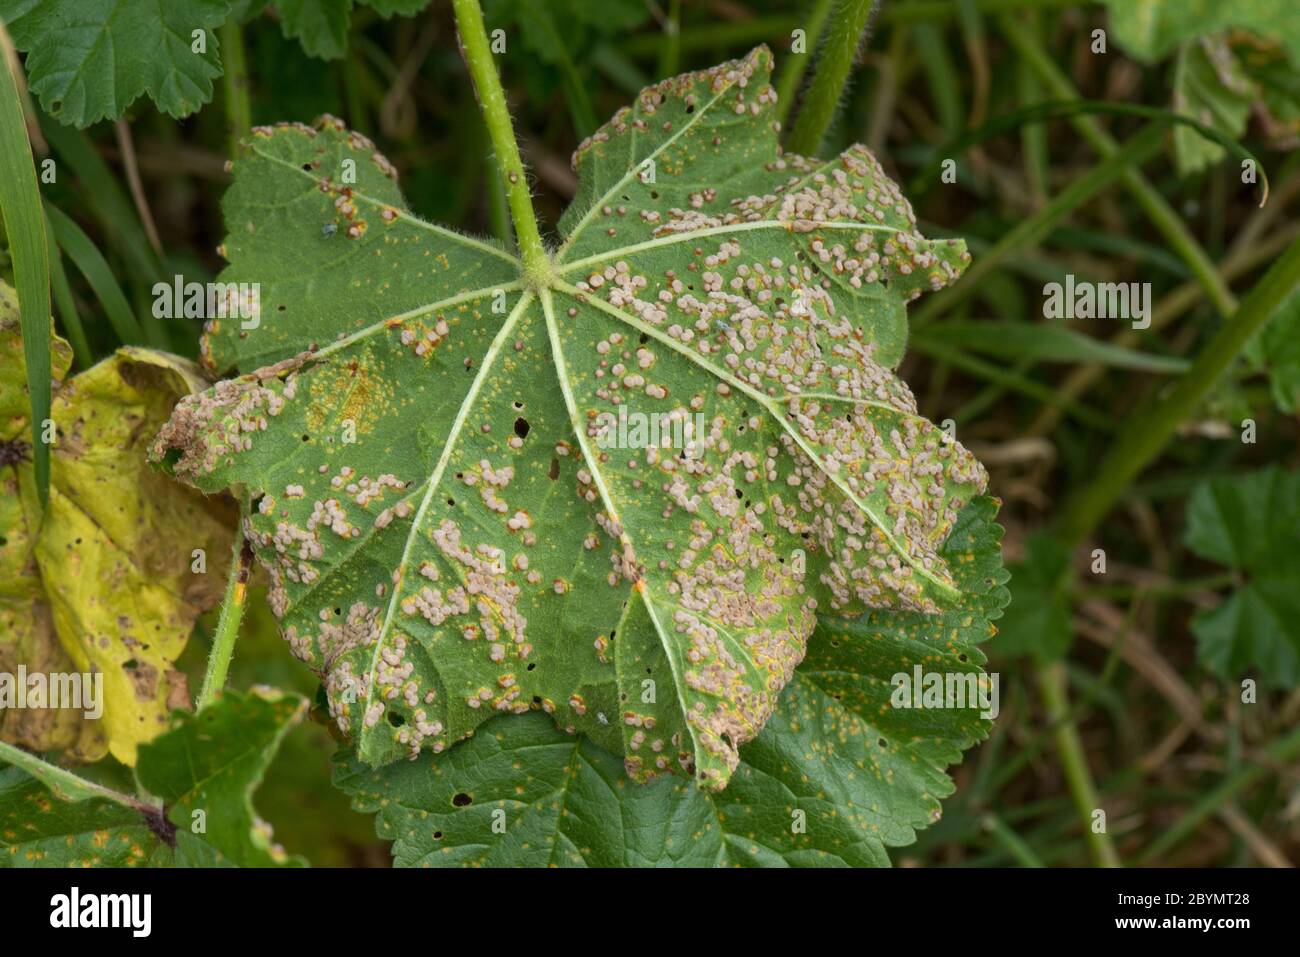 Pustules de la maladie de la rouille du mérin (Puccinia malvacearum) sur la surface inférieure d'une feuille de mérin commun (Malva negecta), Berkshire, juin Banque D'Images